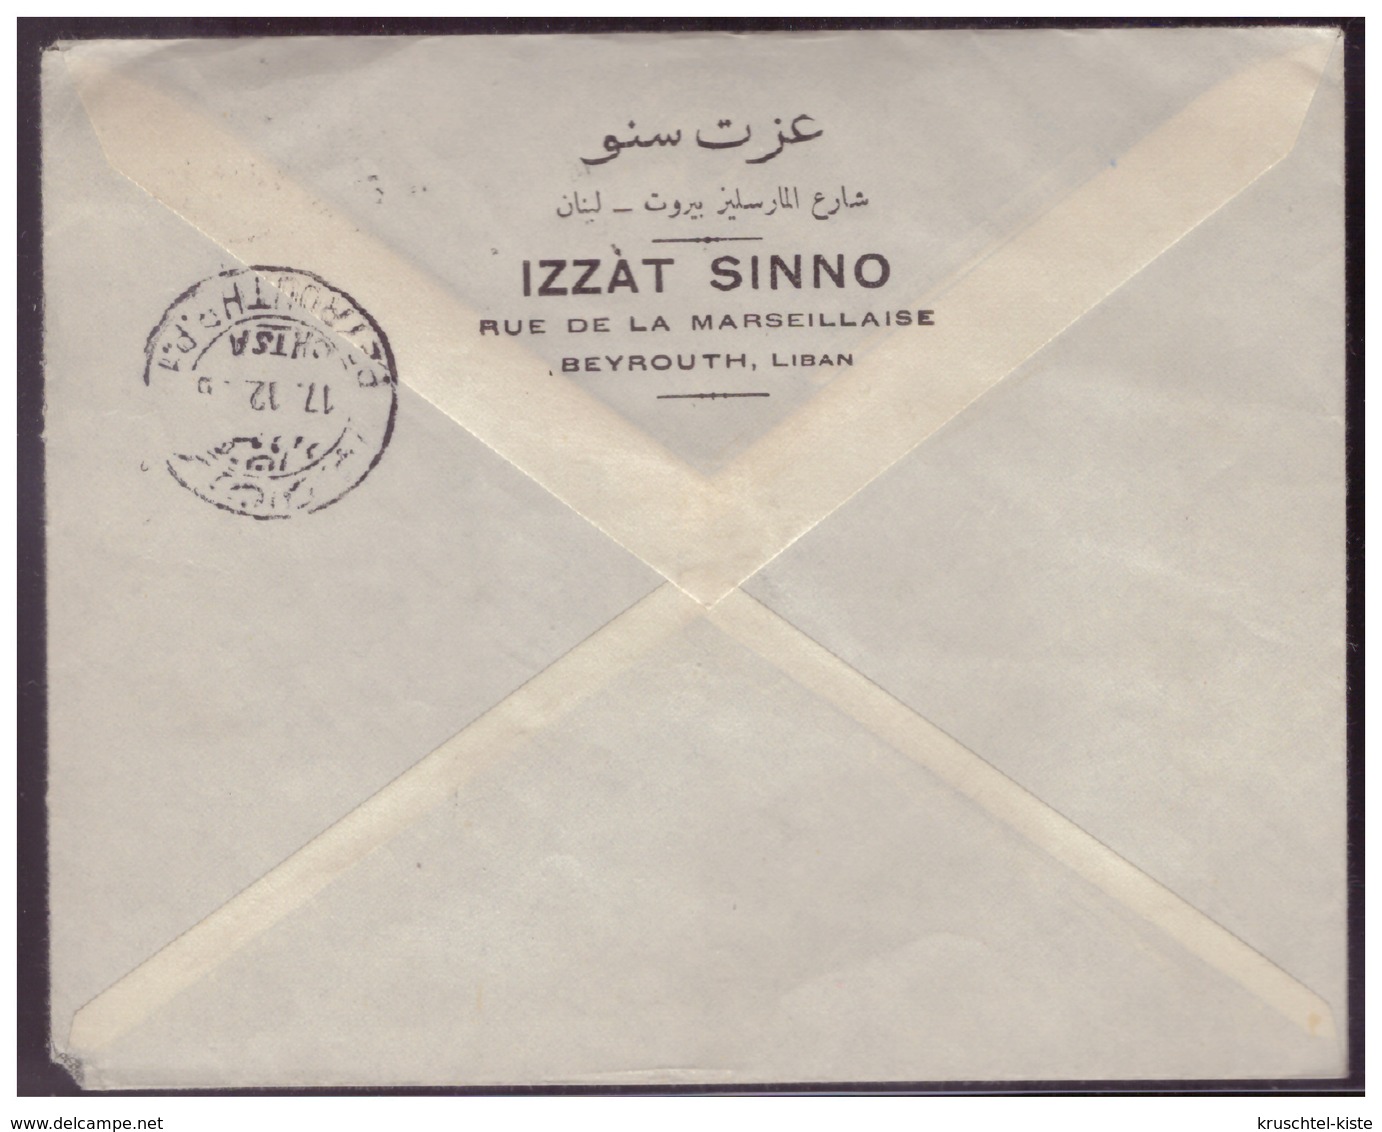 Libanon (007537) Einschreiben Luftpost Beyrouth, Gelaufen Nach Kochel A. See. Am 16.12.1966 - Libanon